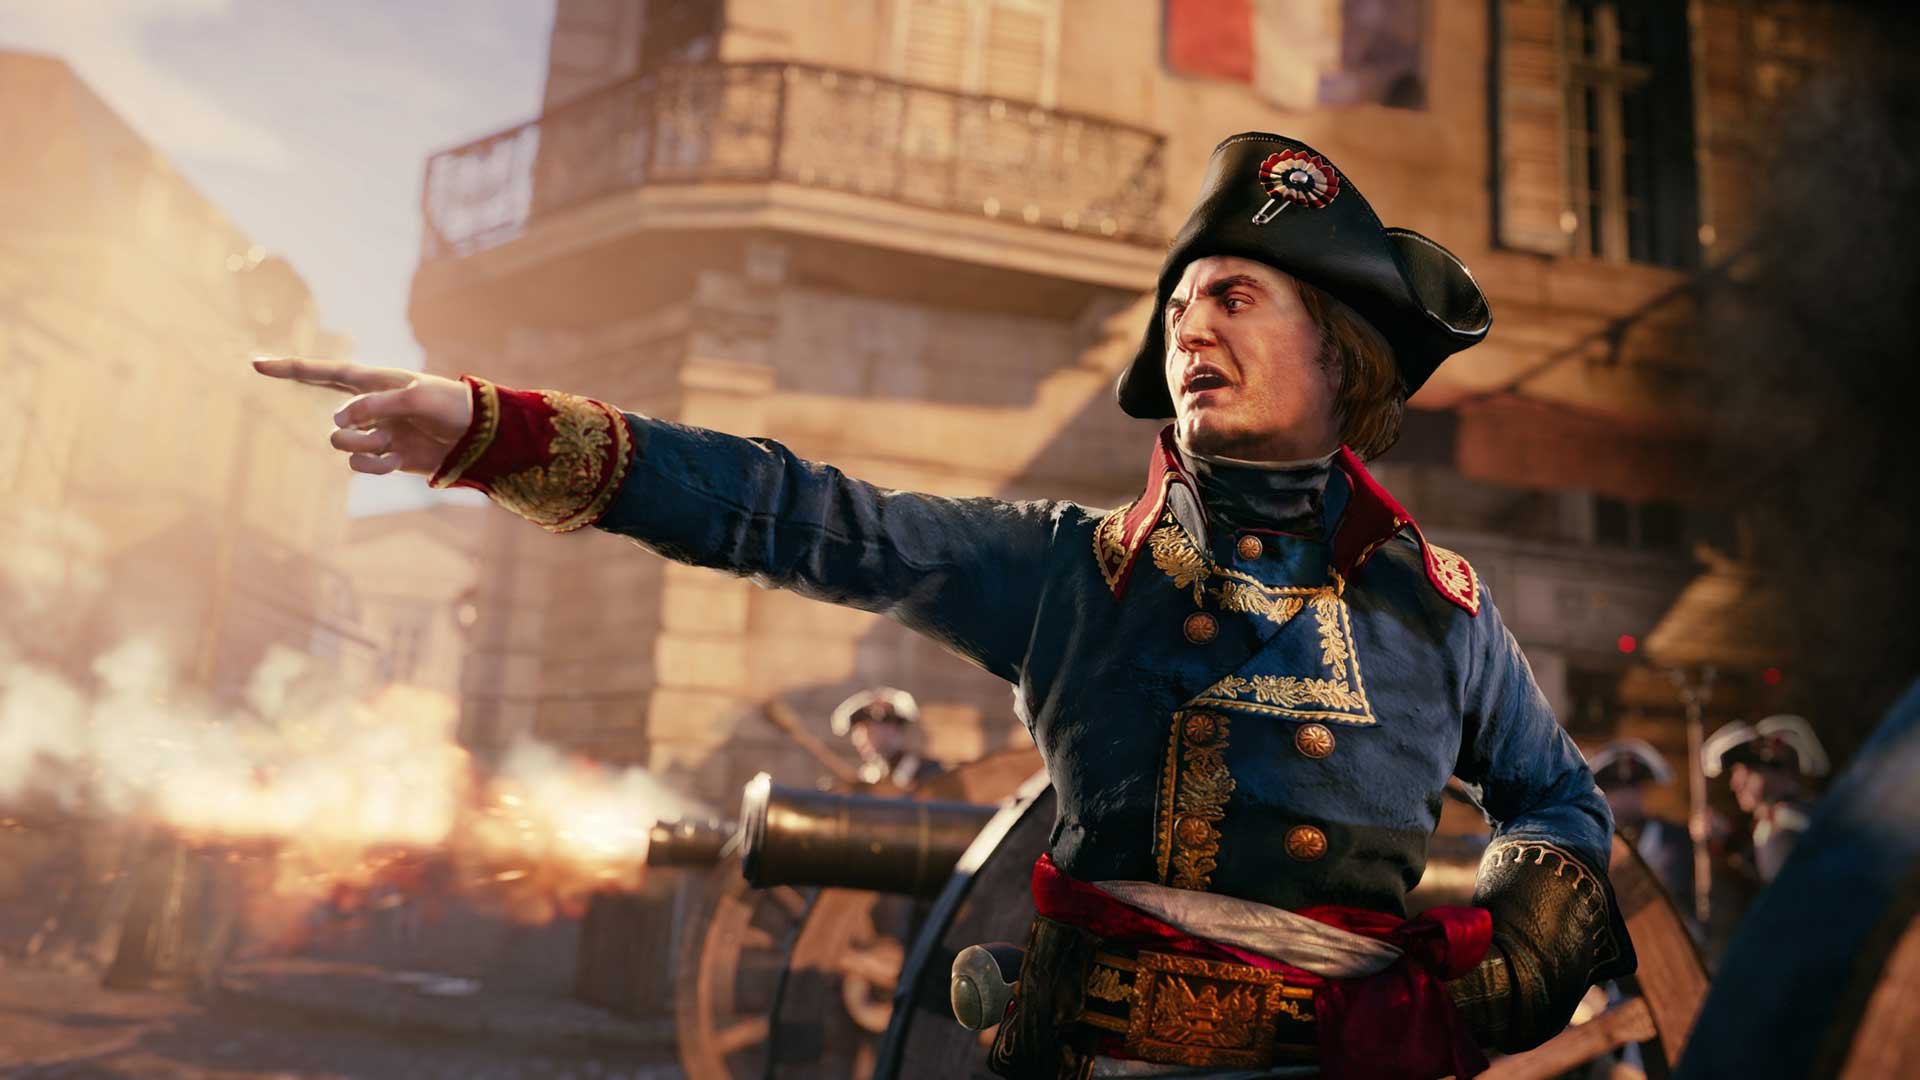 Nové úžasné screeny z Assassin's Creed: Unity